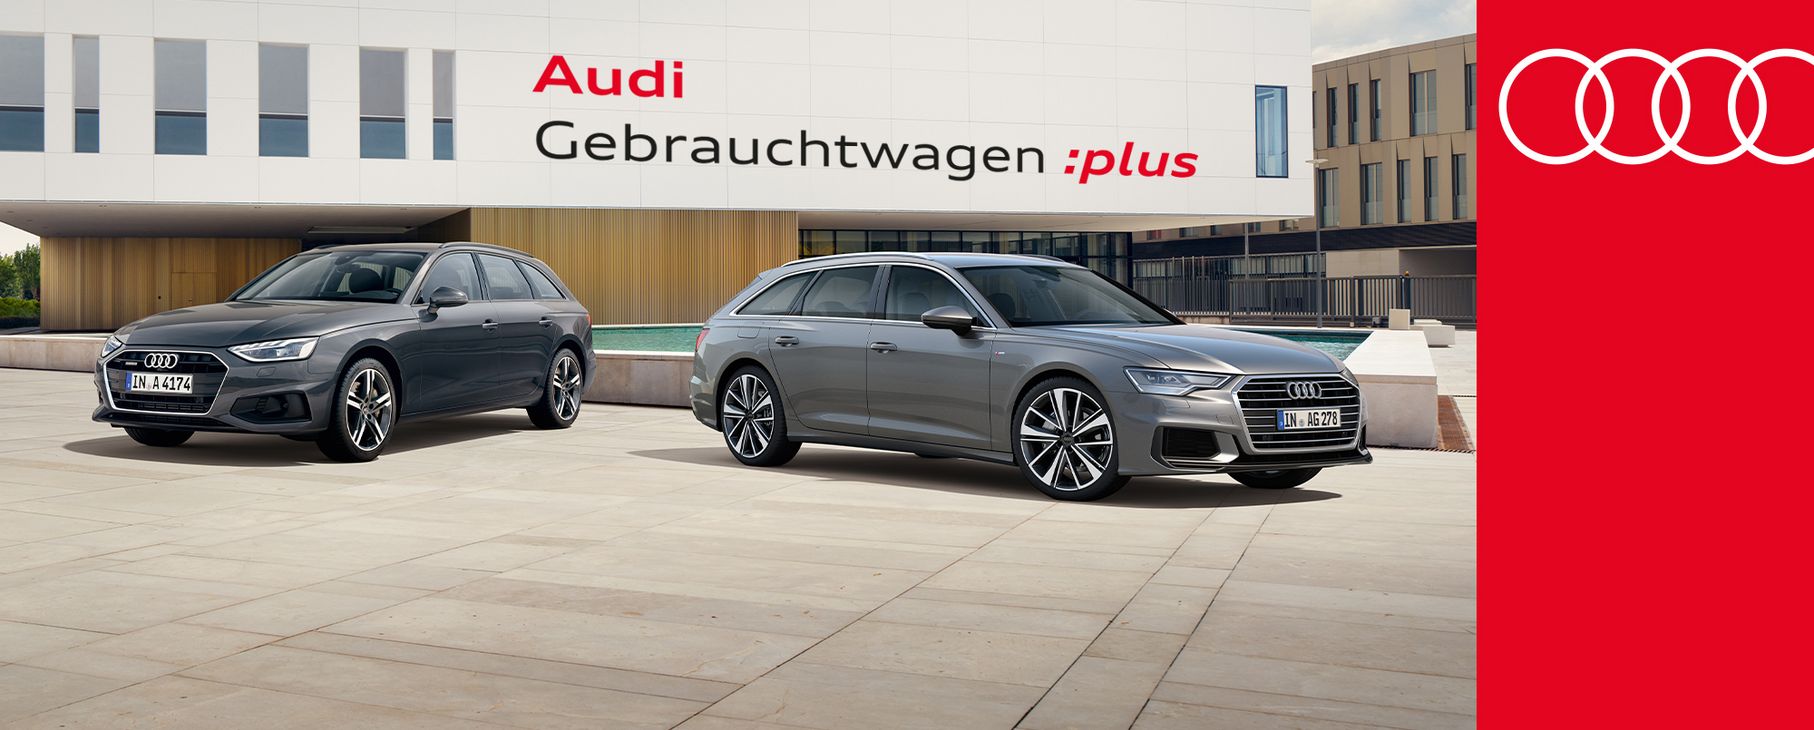 Audi Gebrauchtwagen :plus Aktion